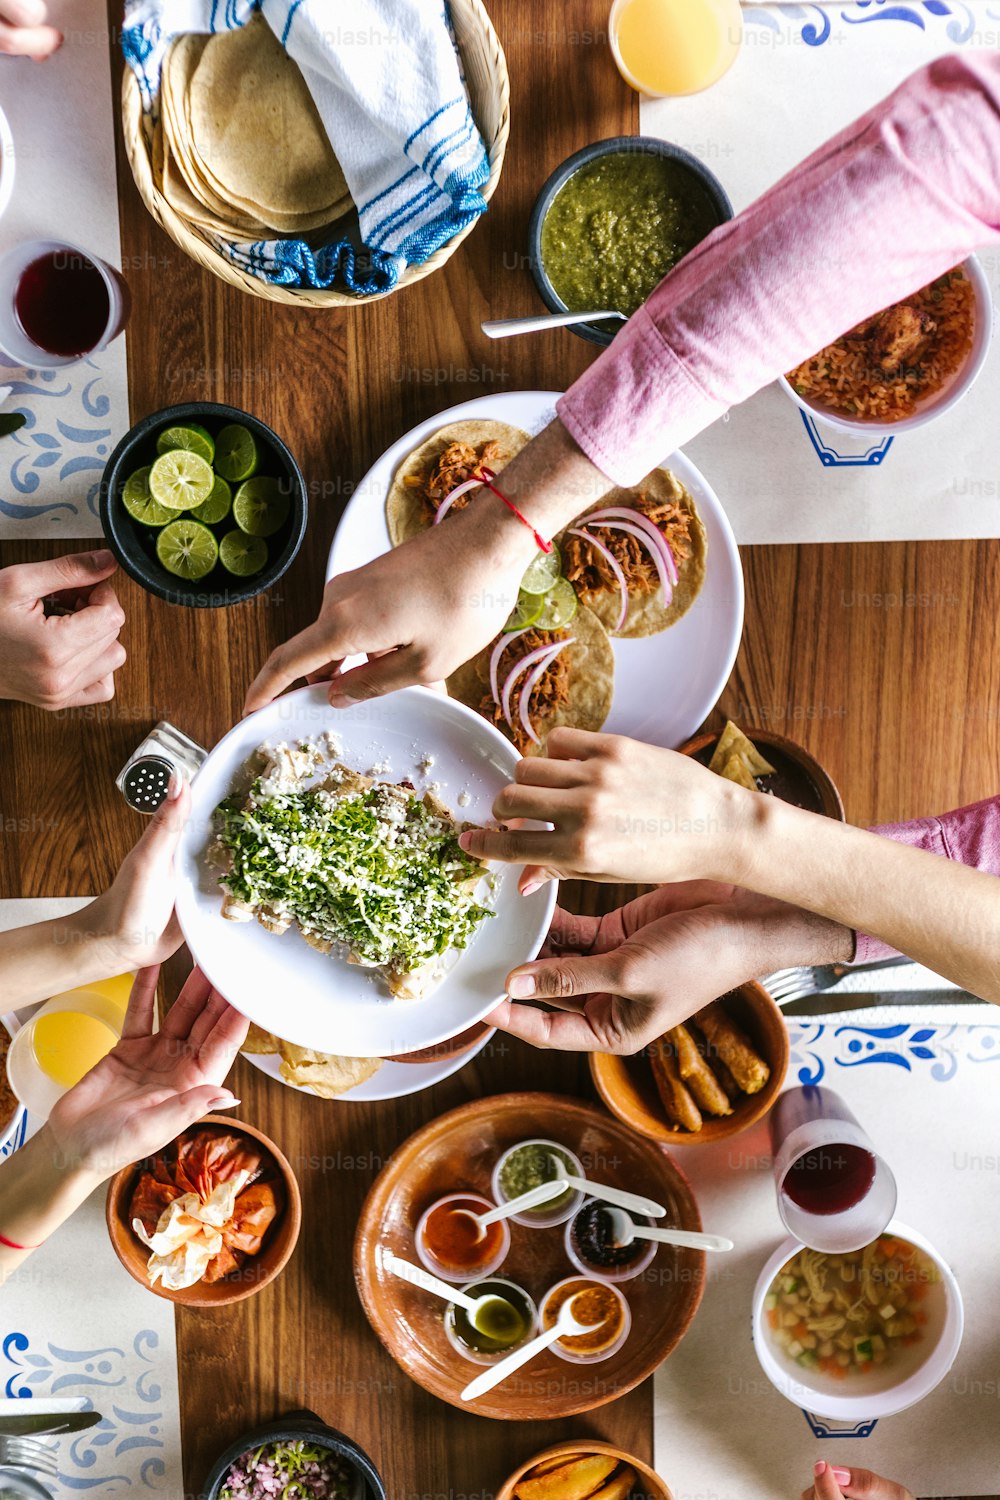 gruppo di amici latini che mangiano tacos messicani e cibo tradizionale, spuntini e persone mani sopra il tavolo, vista dall'alto. Cucina messicana America Latina